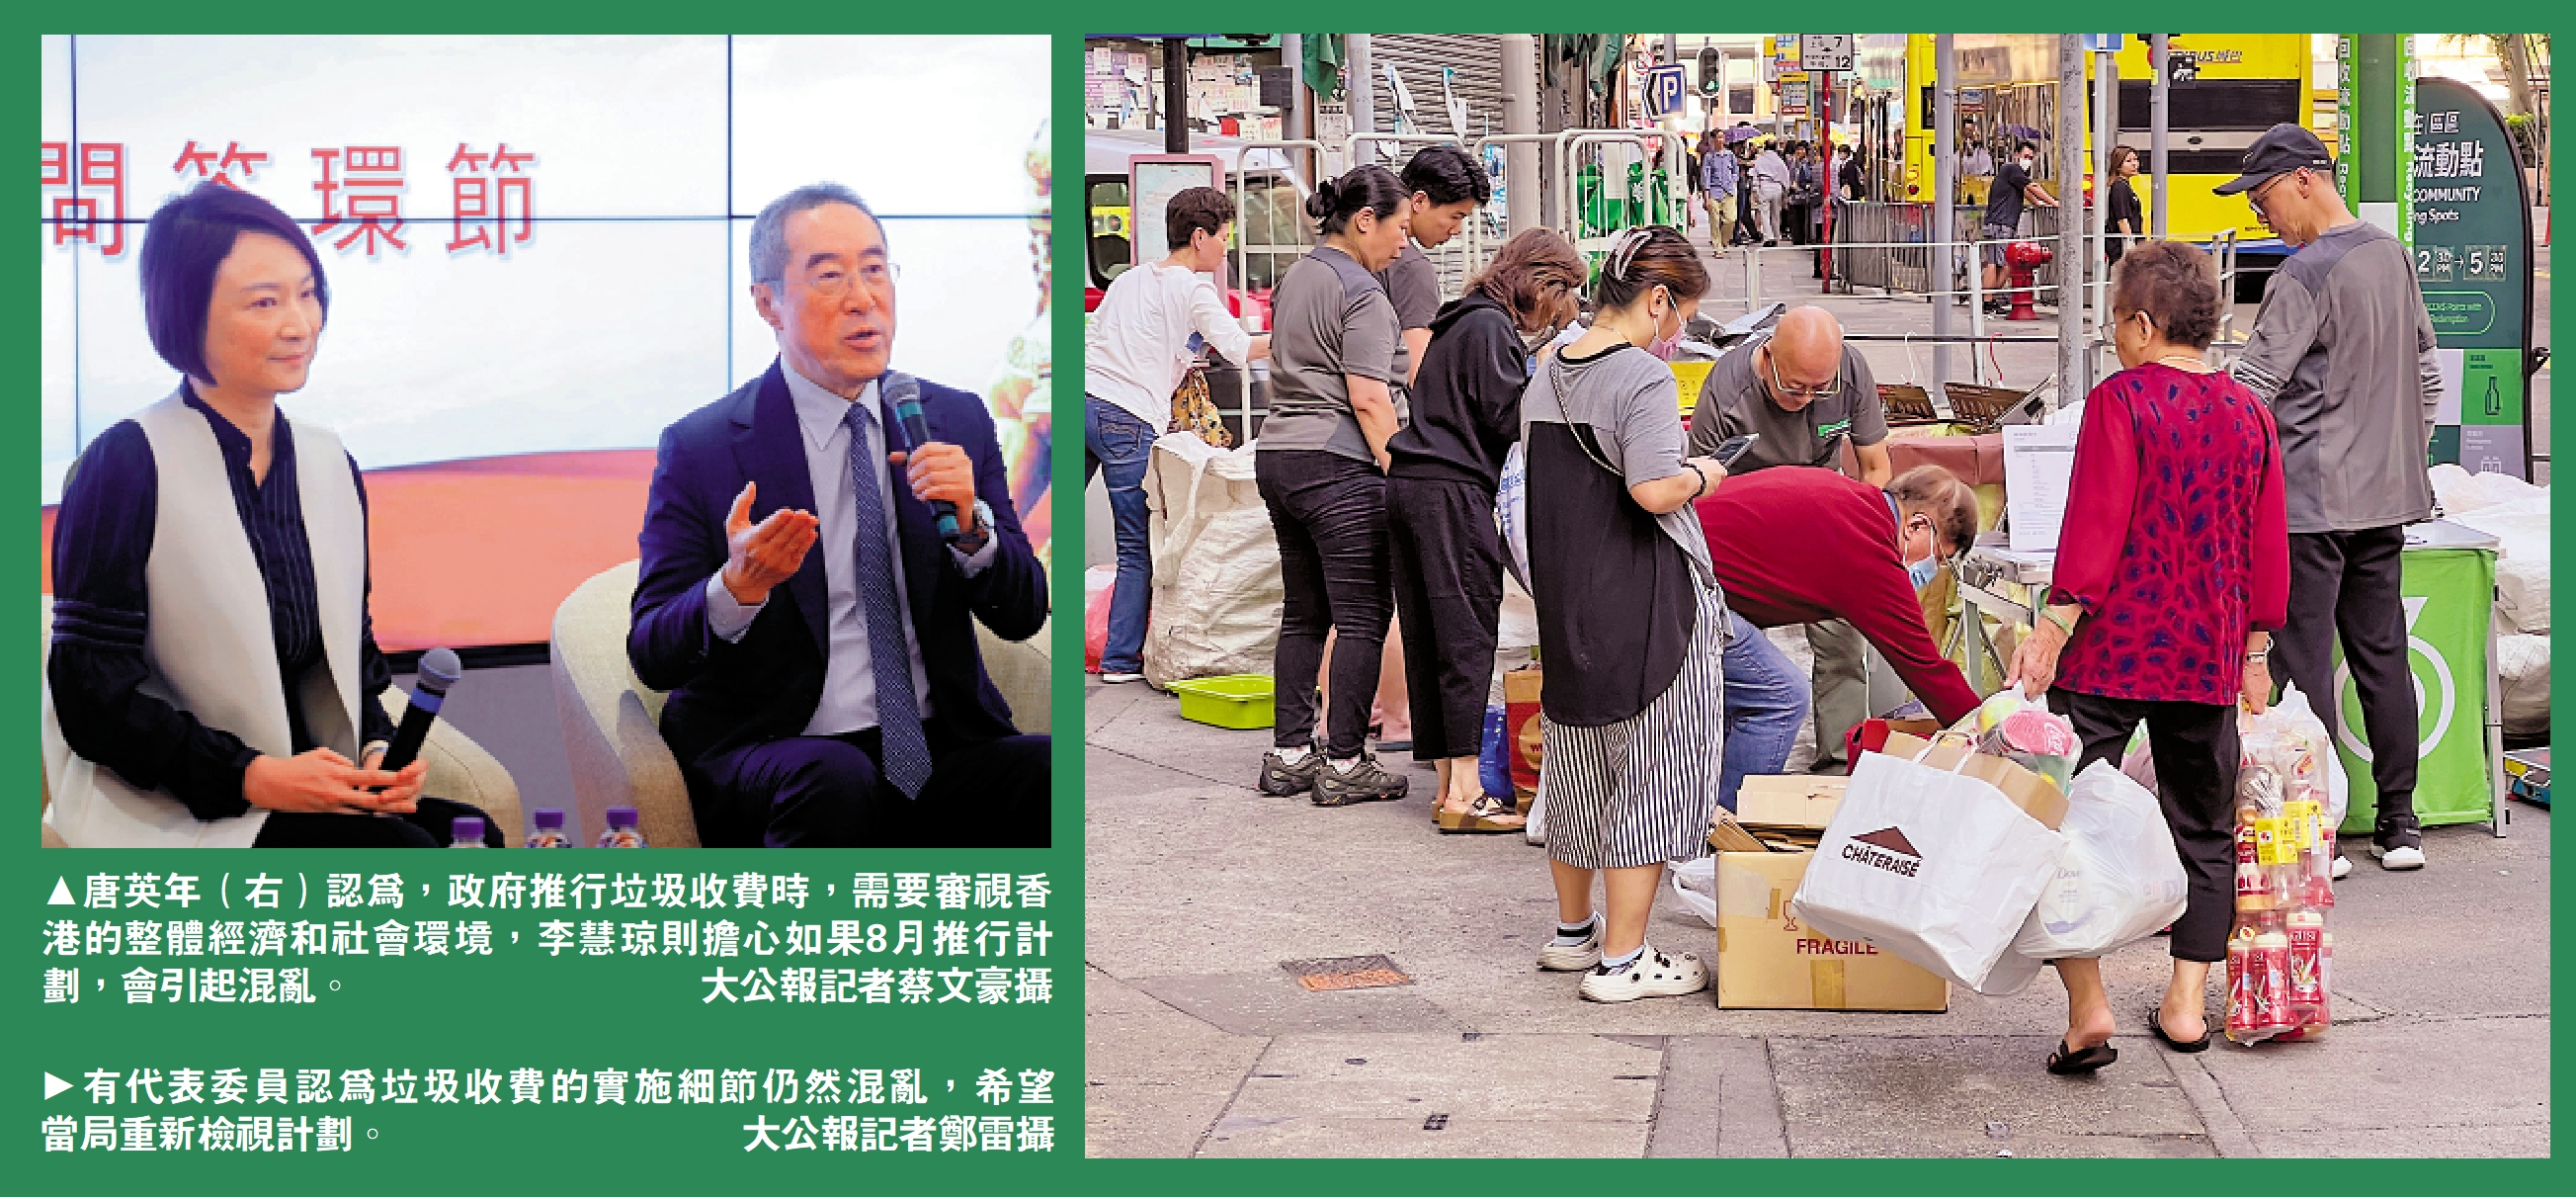 　　左圖：唐英年認為，政府推行垃圾收費時，需要審視香港的整體經濟和社會環境，李慧琼則擔心如果8月推行計劃，會引起混亂。\大公報記者蔡文豪攝；右圖：市民對垃圾收費的實施細節仍然感到混亂，希望政府審慎考慮。\大公報記者鄭雷攝